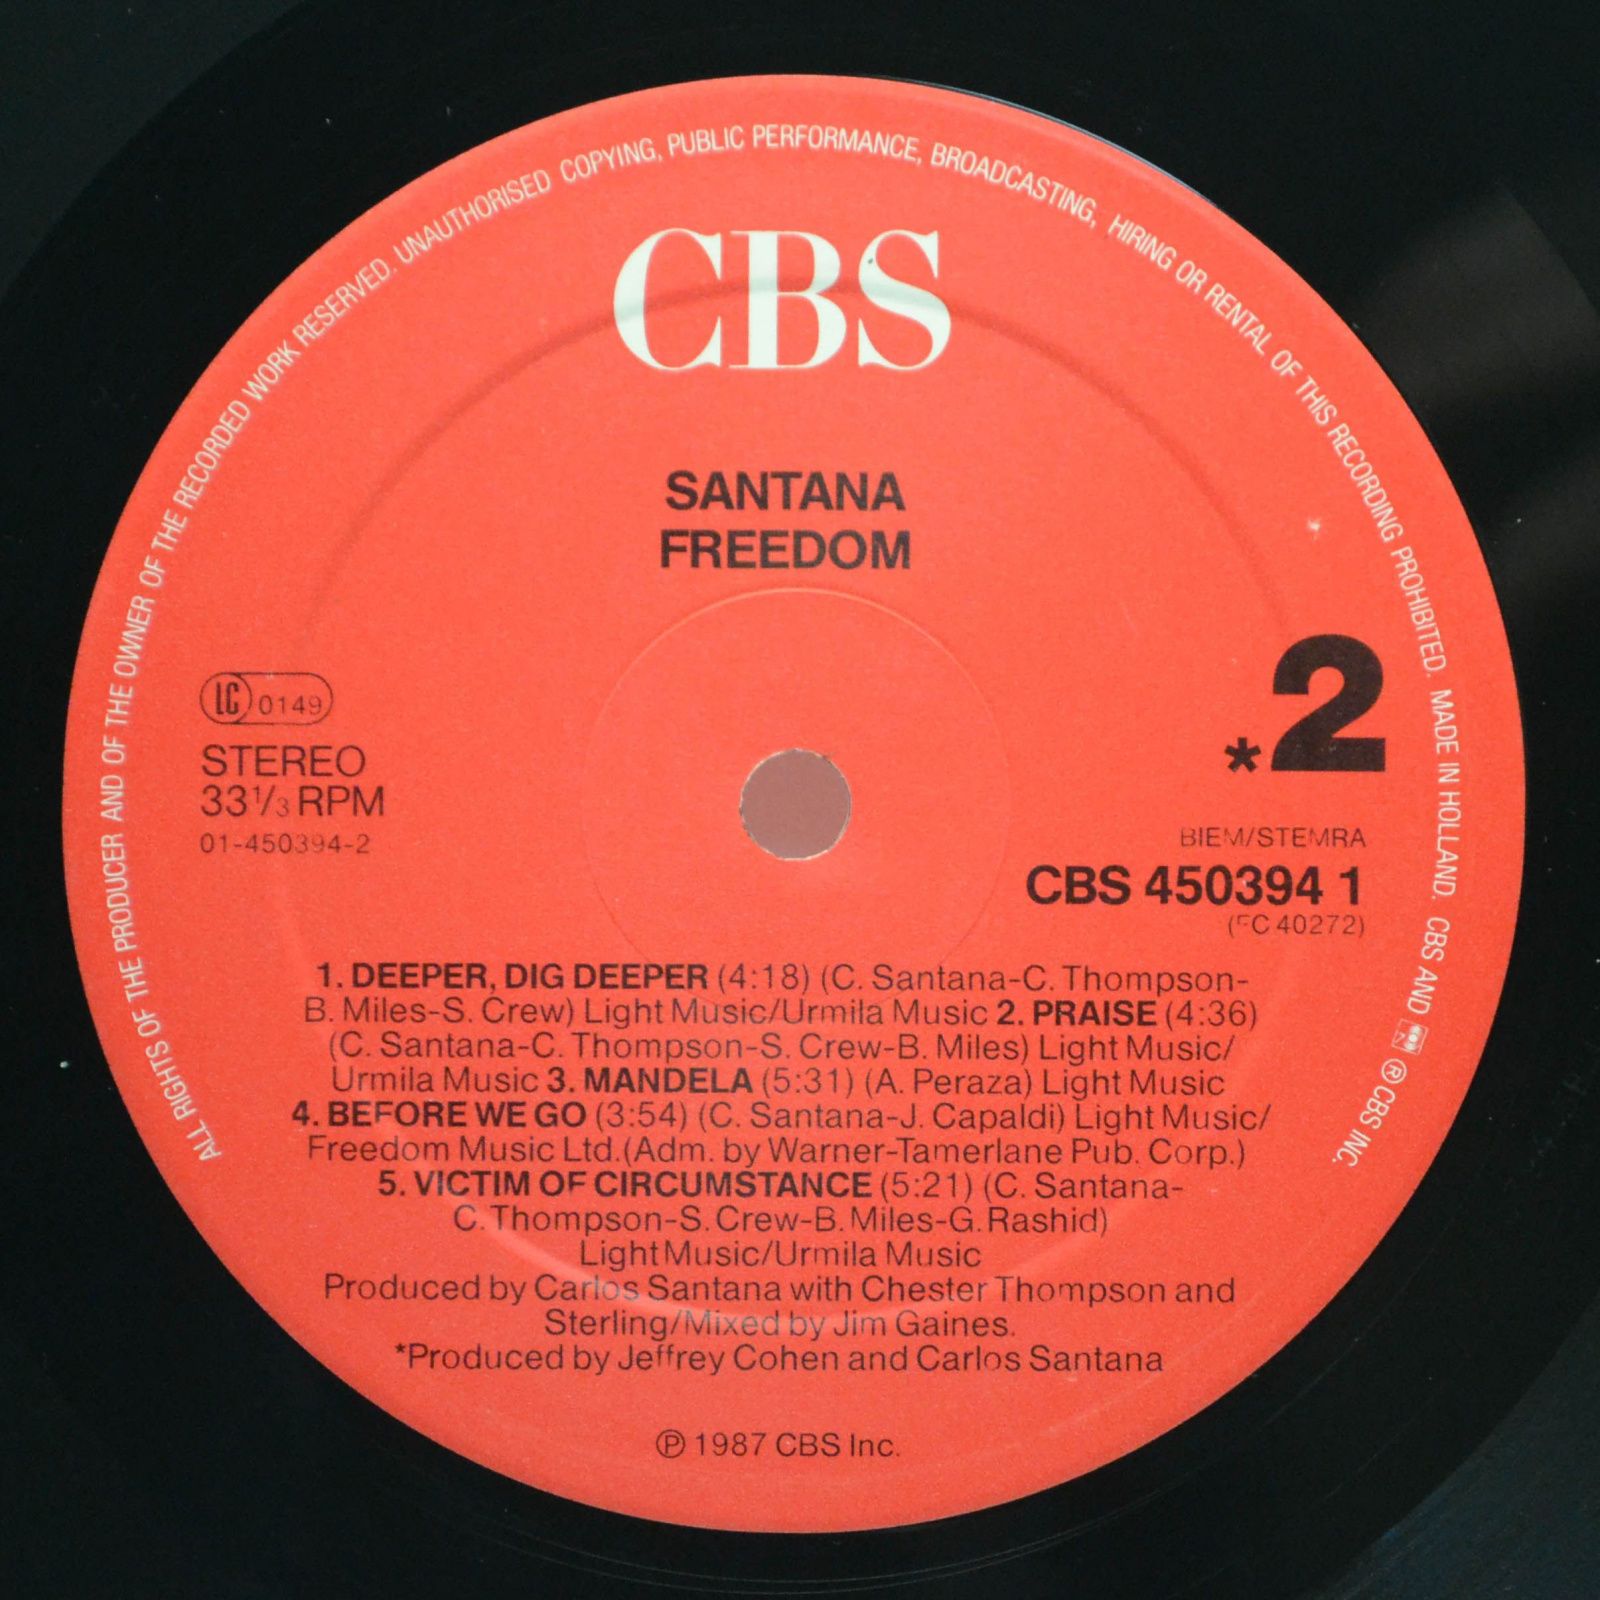 Santana — Freedom, 1987